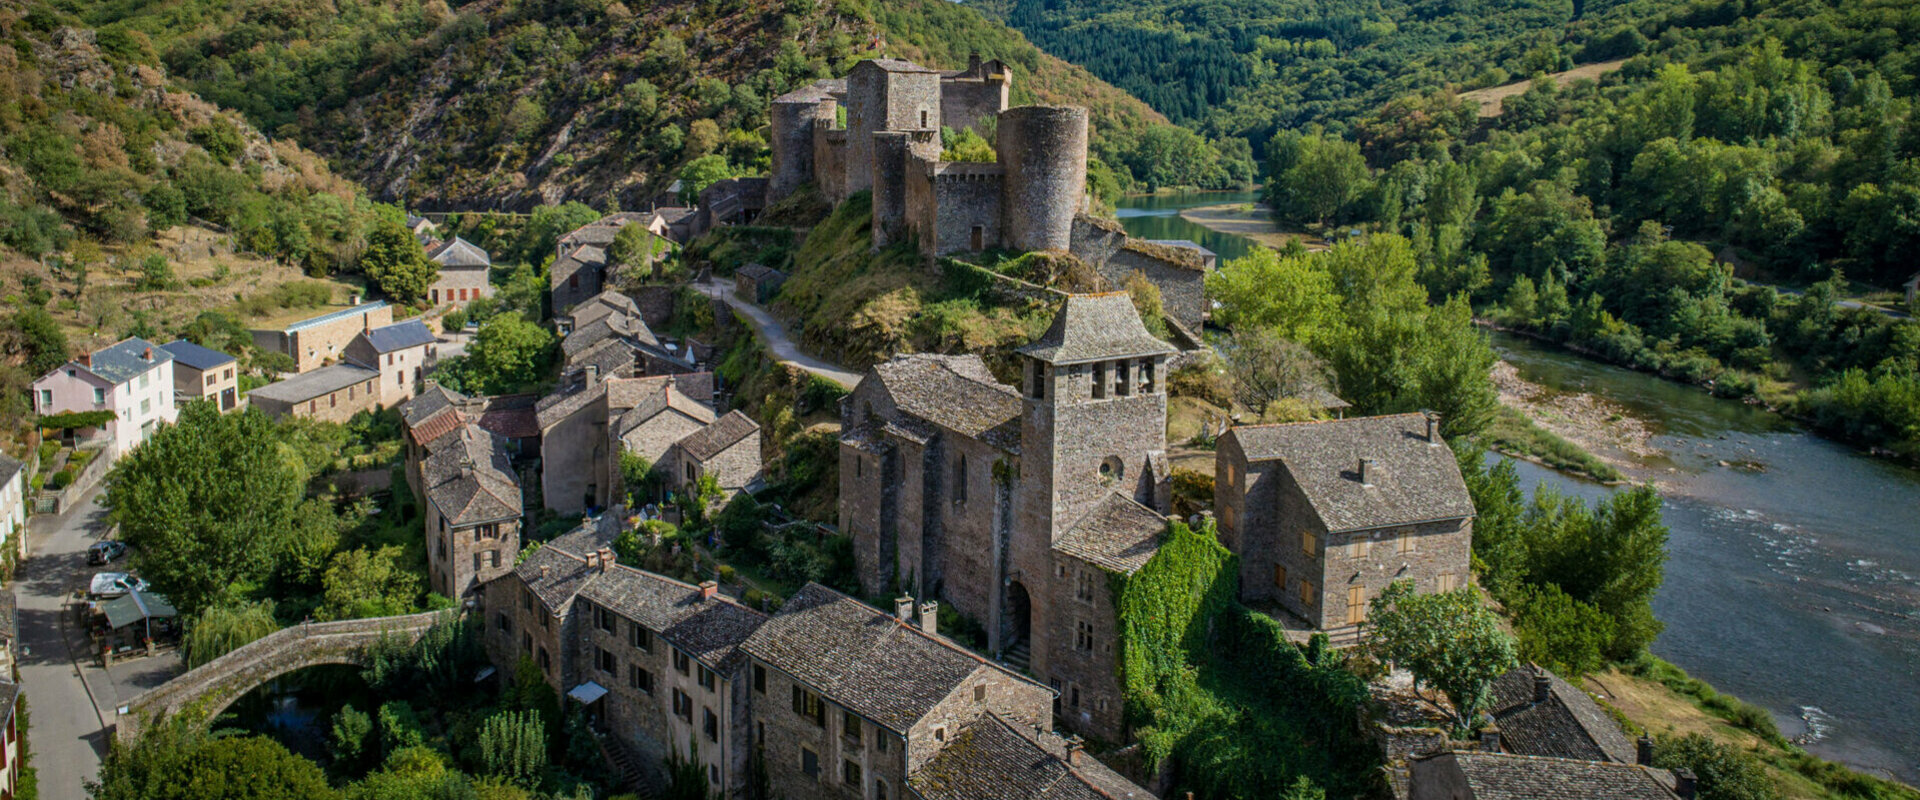 Accueil Commune de Brousse le Château - Aveyron